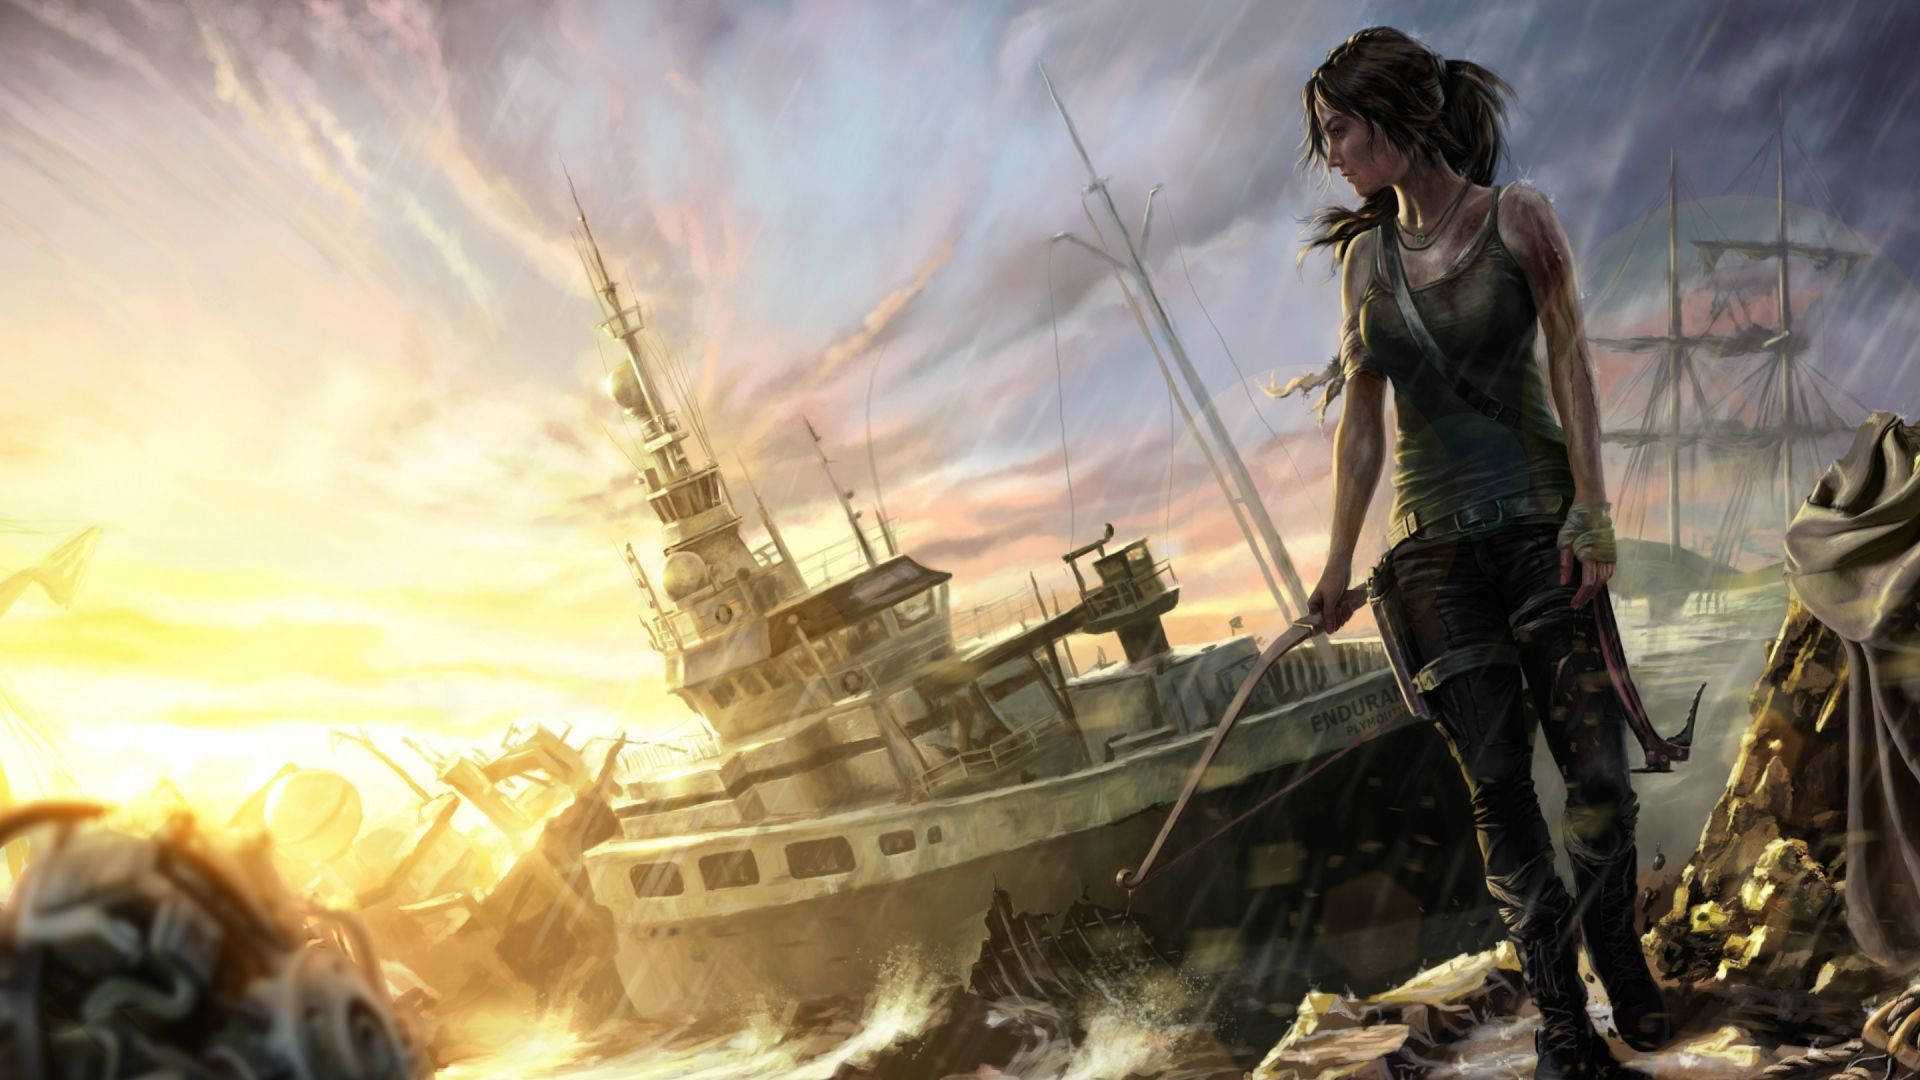 Tomb Raider Ships And Croft Wallpaper